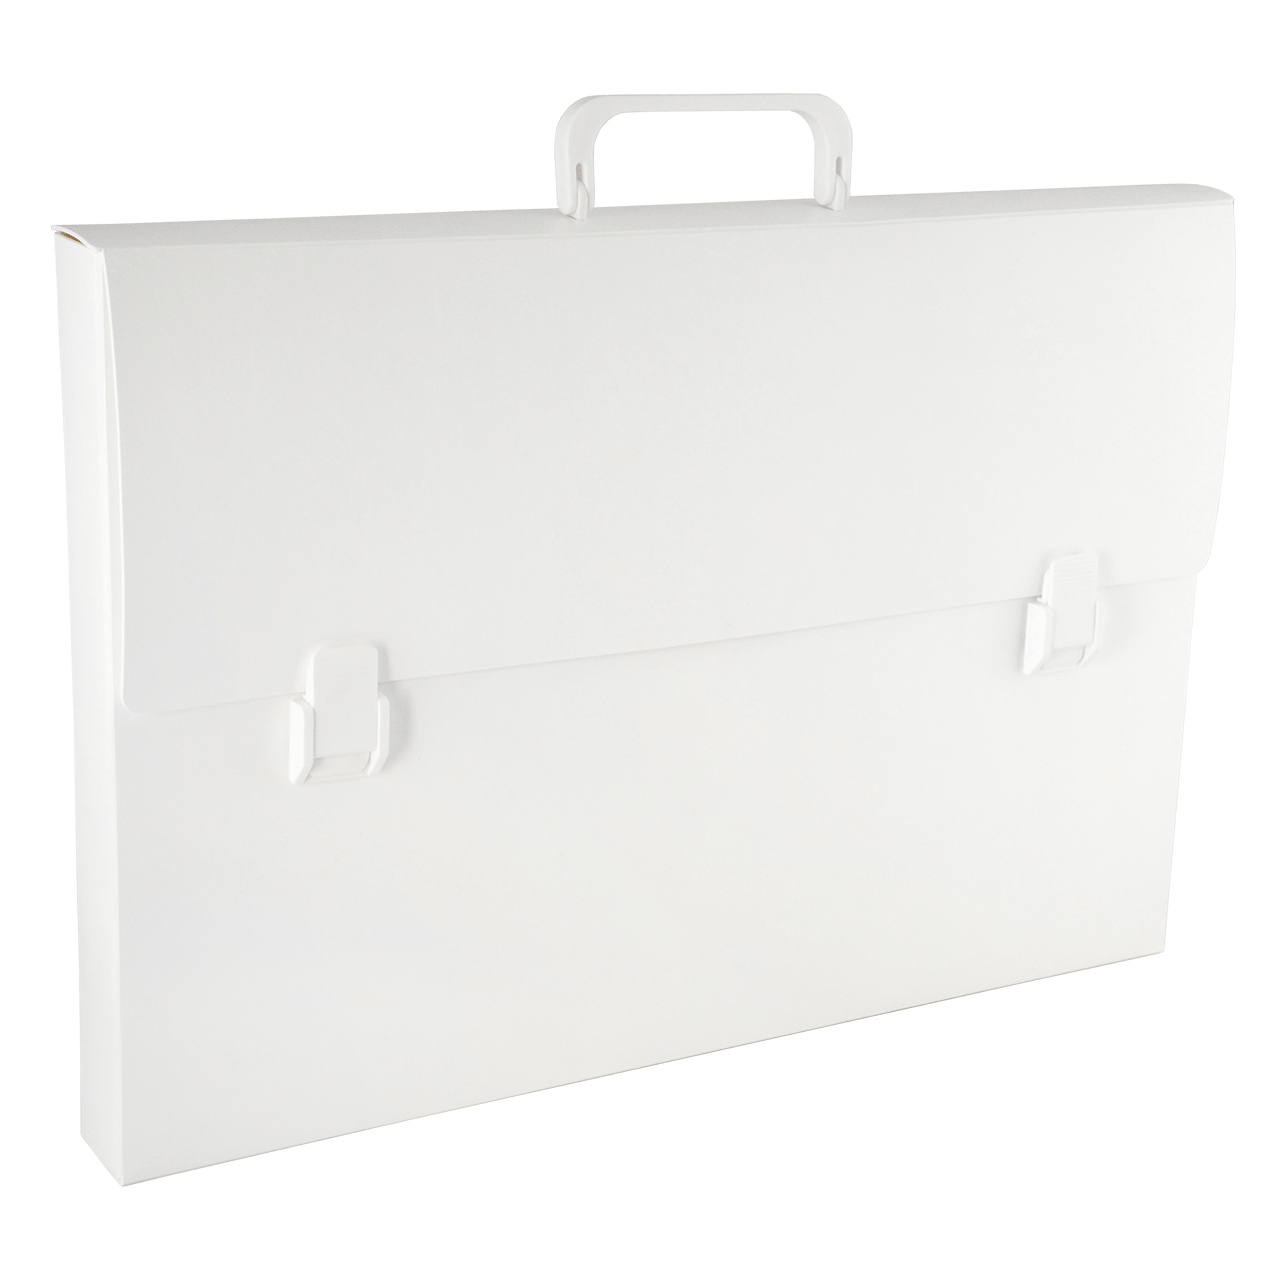 11x17 Portfolio Case (White)